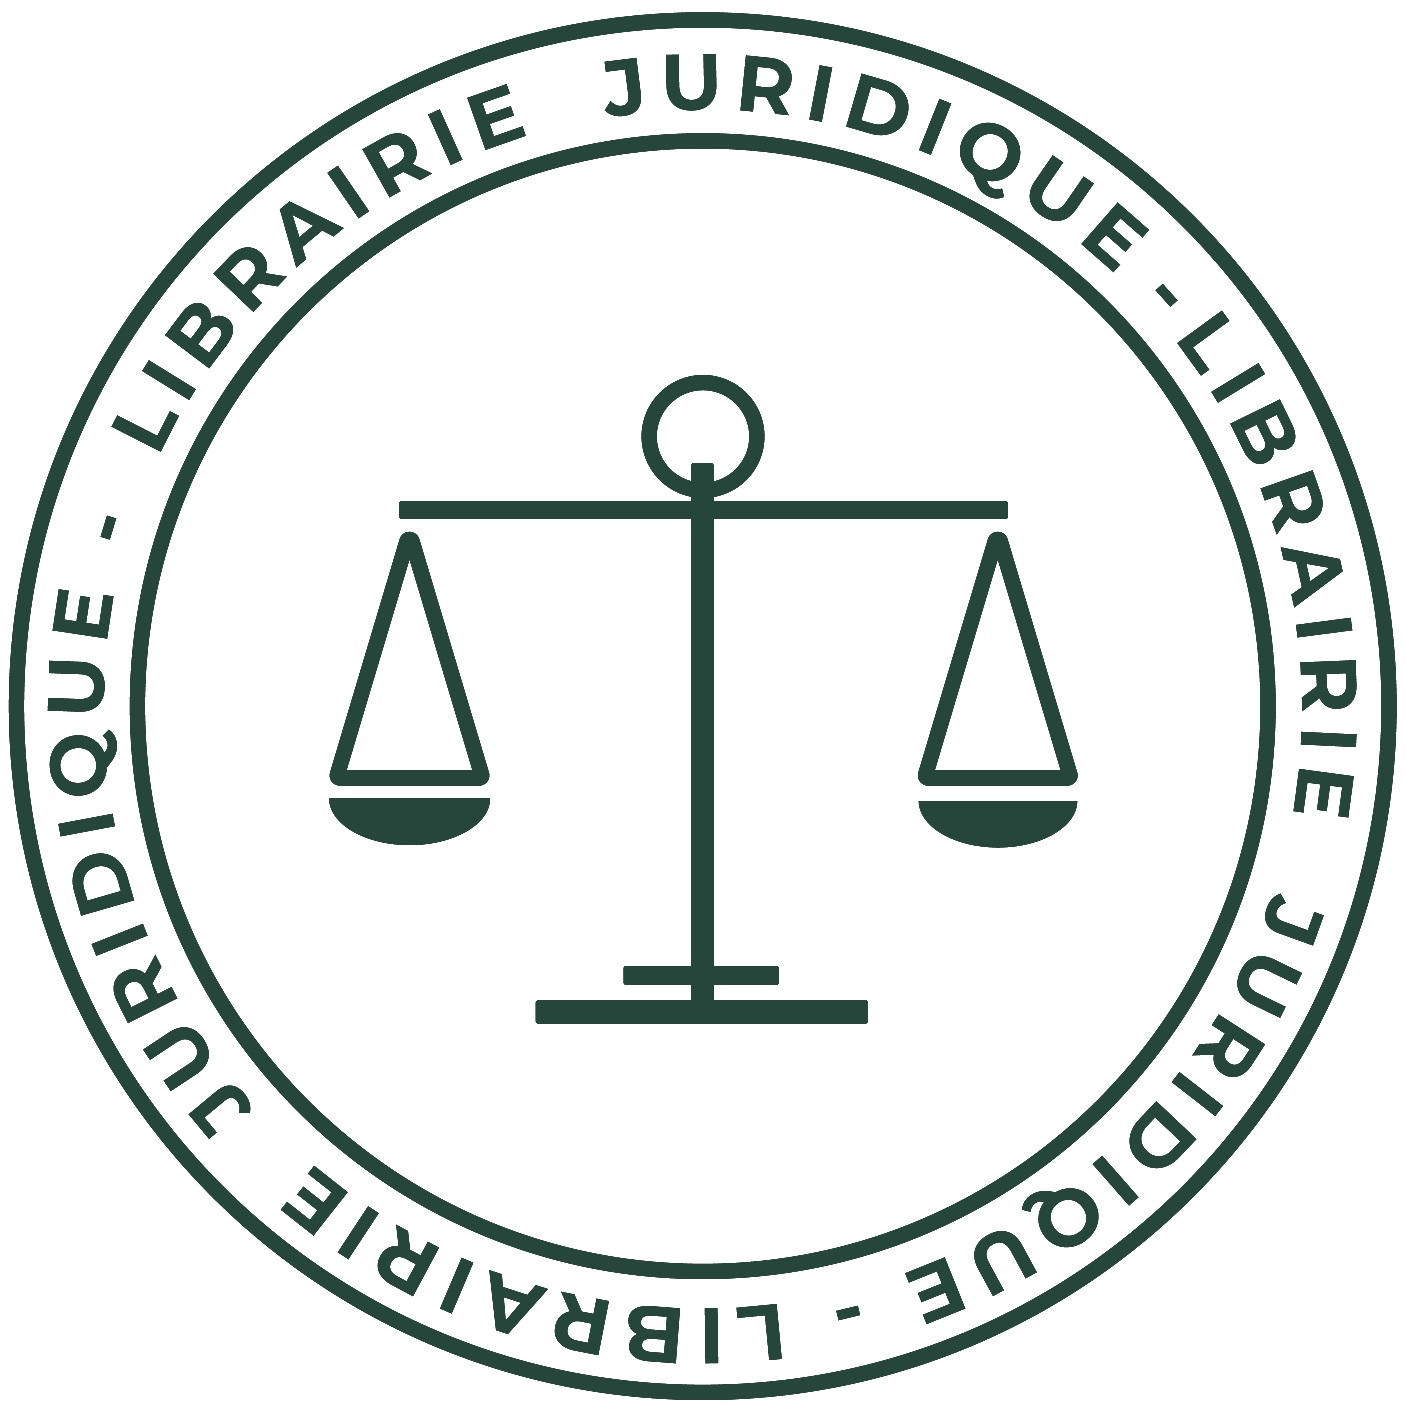 Librairie Juridique des Etudiants